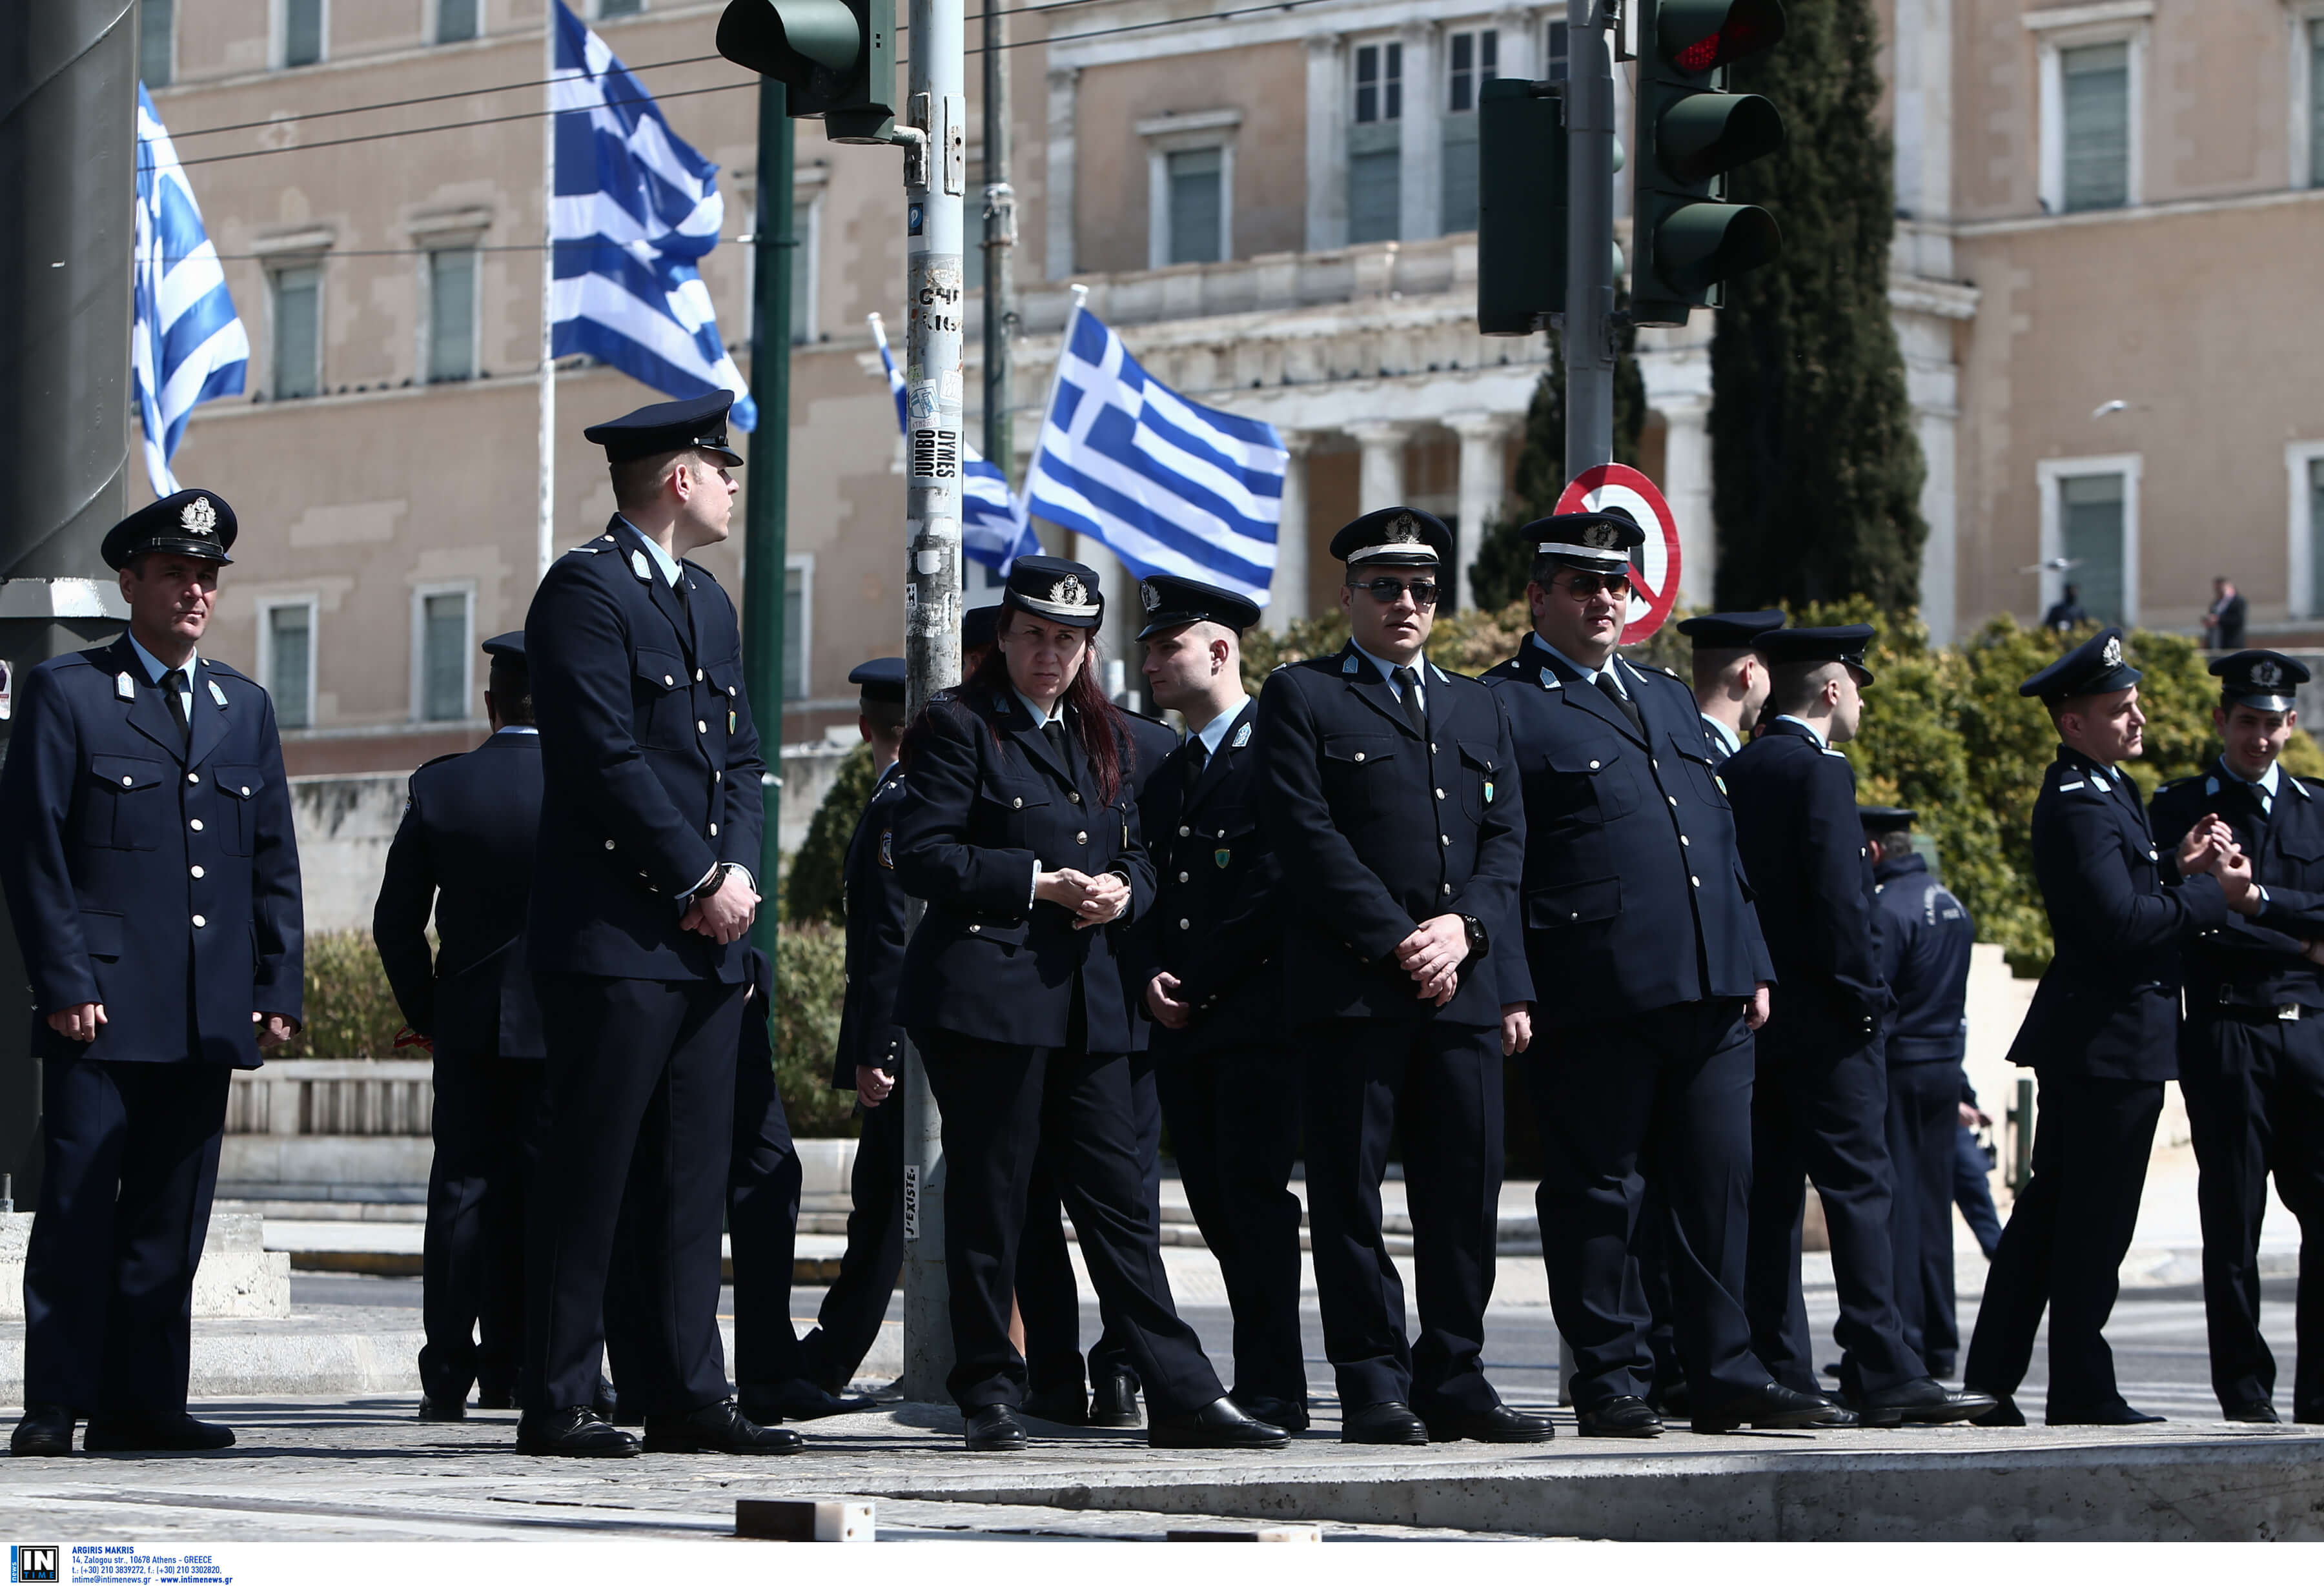 25η Μαρτίου: Παρελάσεις… σε κλοιό ασφαλείας! 1.600 αστυνομικοί στην Αθήνα λόγω… Πρεσπών!